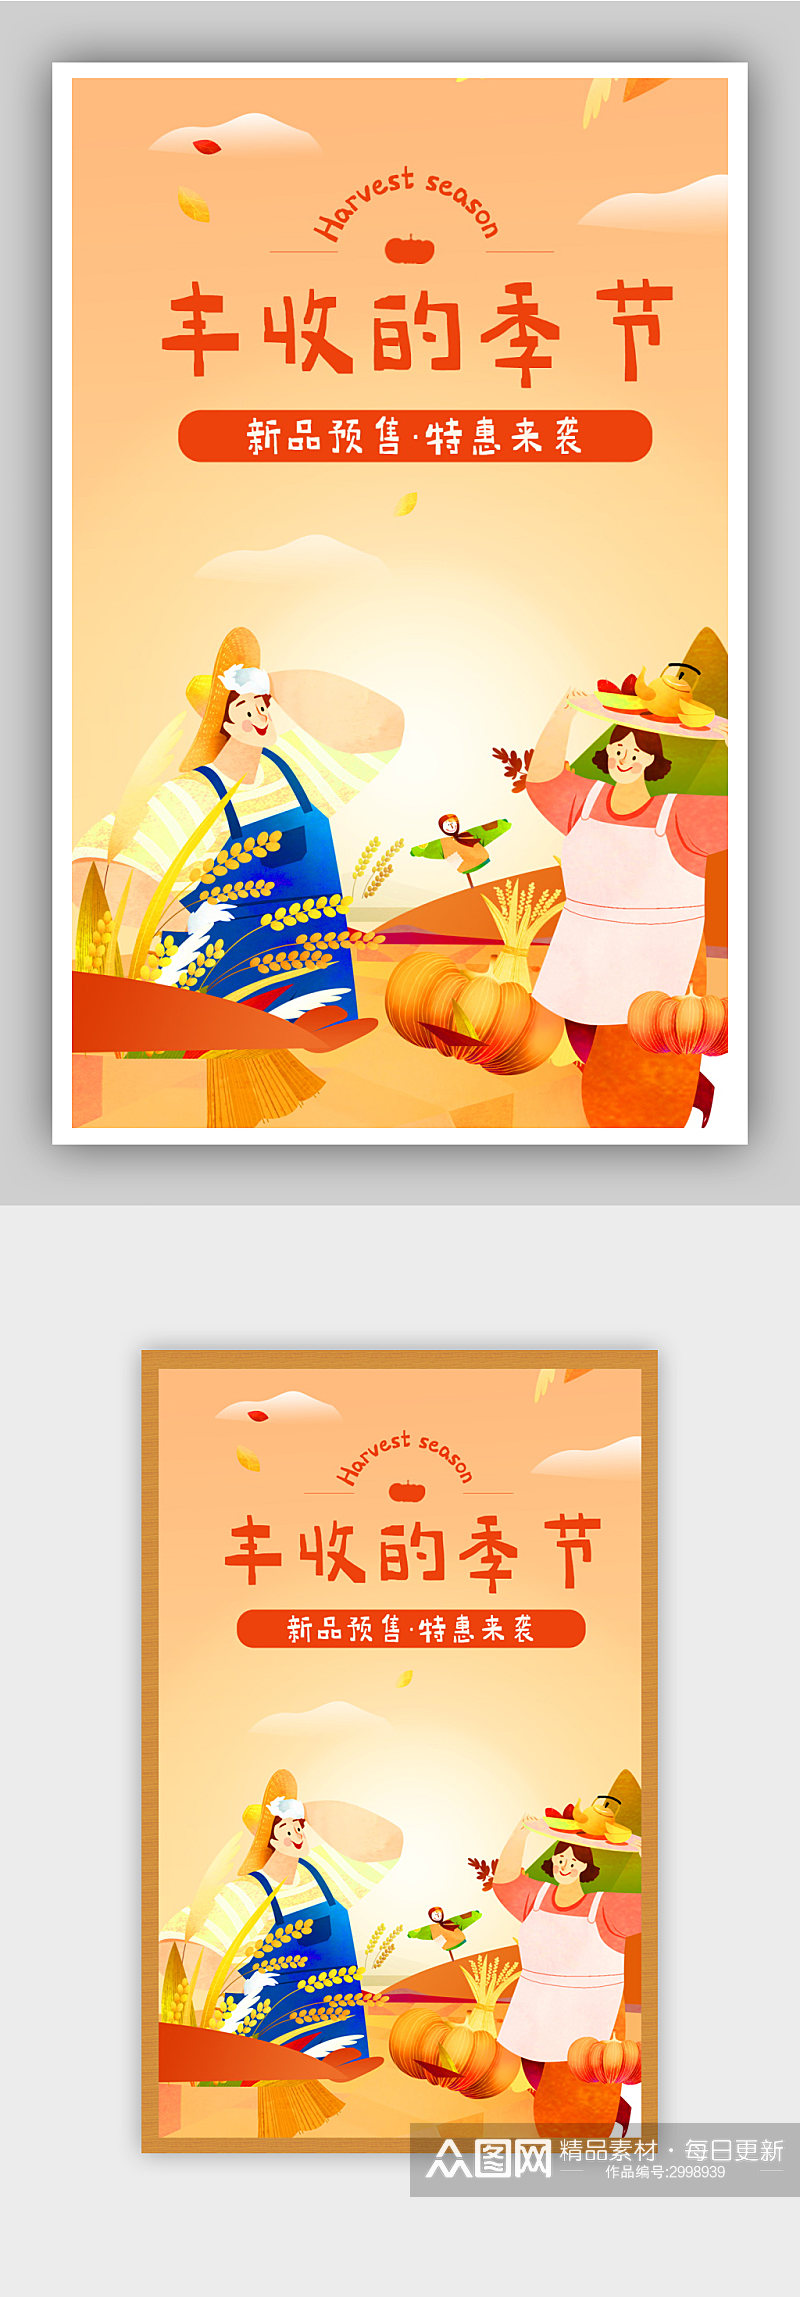 秋季上新丰收节食品海报banner素材